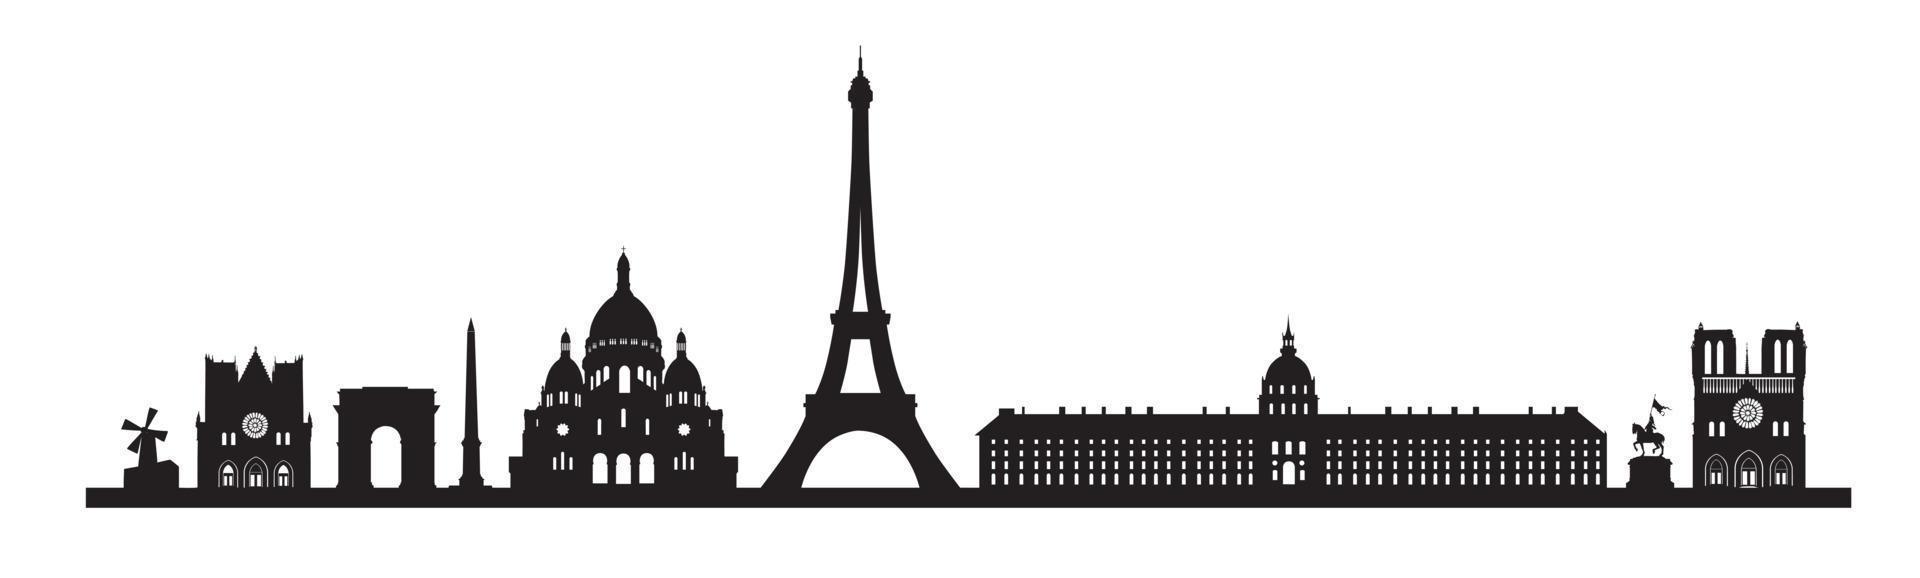 Paris skyline background. Paris famous landmark icon set. France, Paris travel black cityscape vector